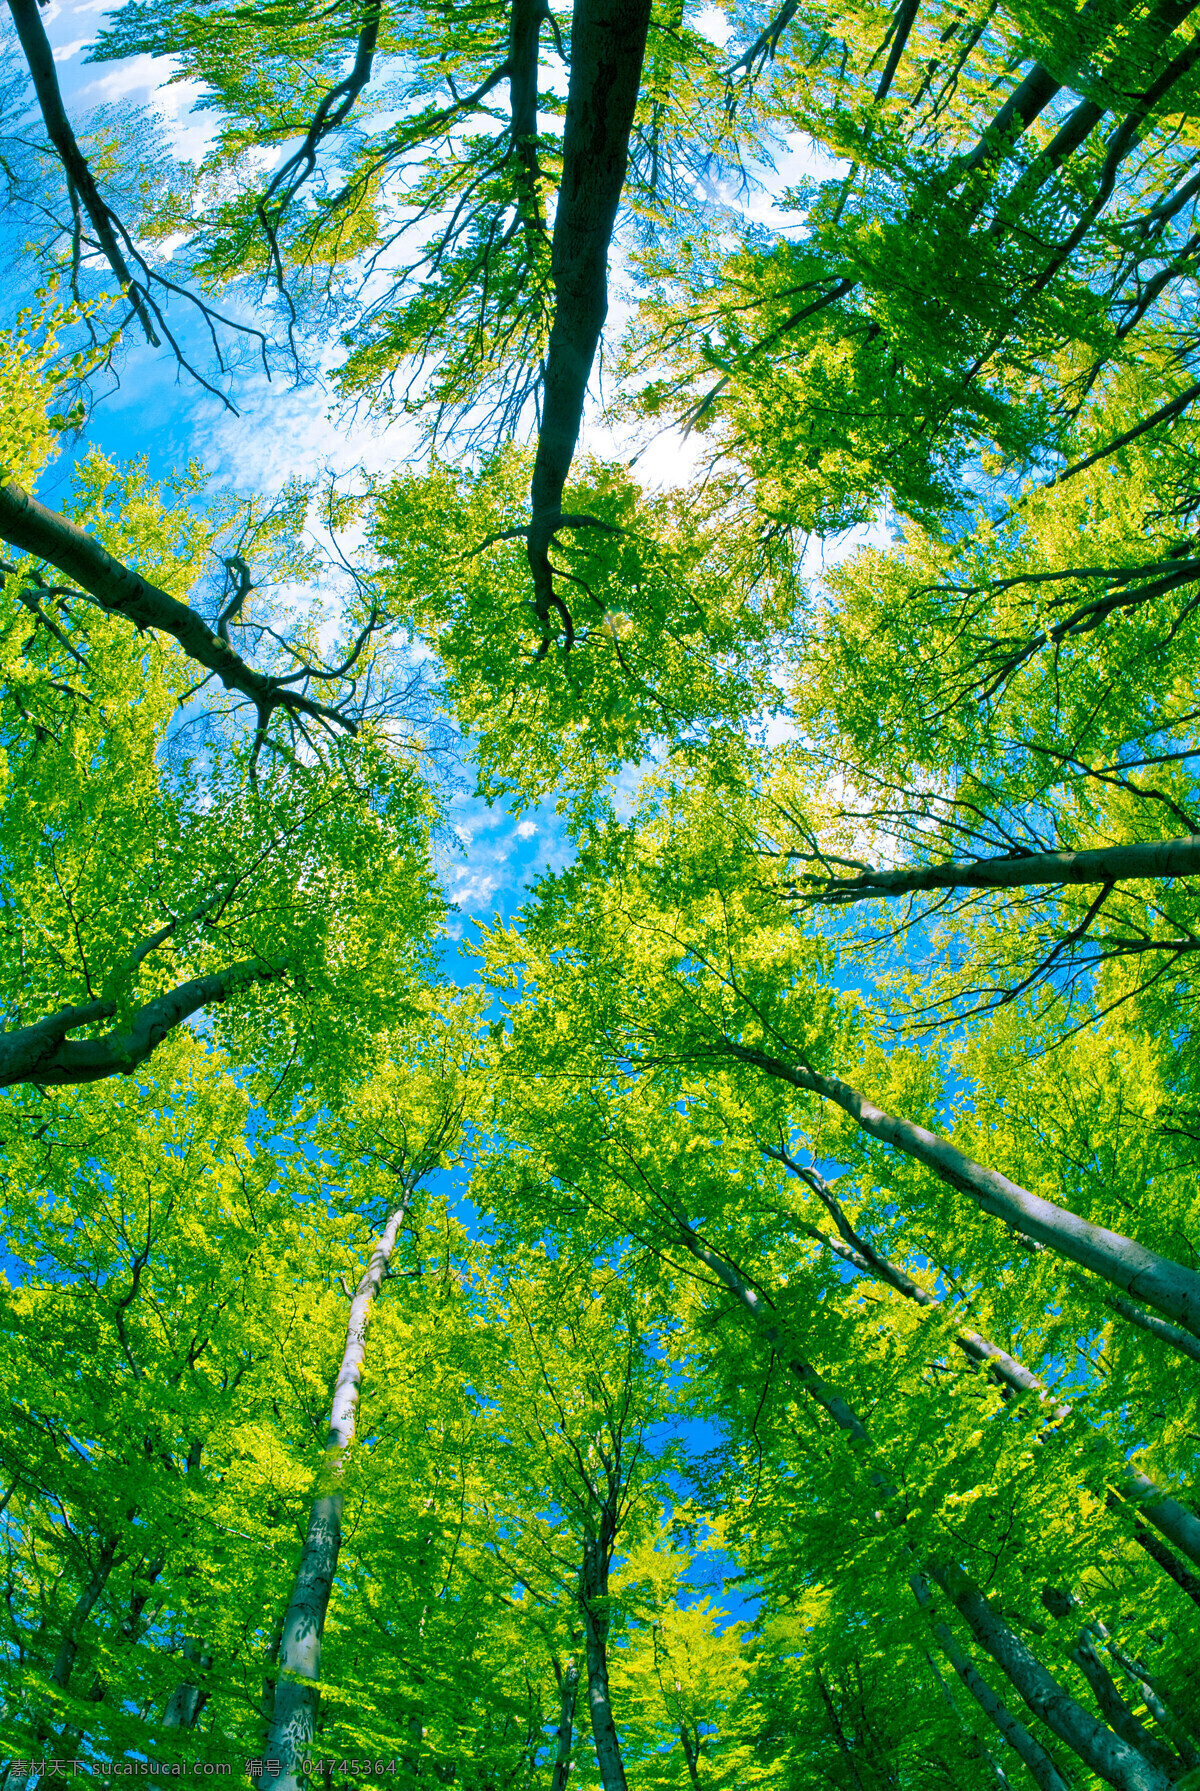 仰视 蓝天 白云 绿树 树林 森林 树木 树枝 绿叶 茂盛 浓郁 清新 清爽 春天树林 春季树林 树林树木摄影 树木树叶 生物世界